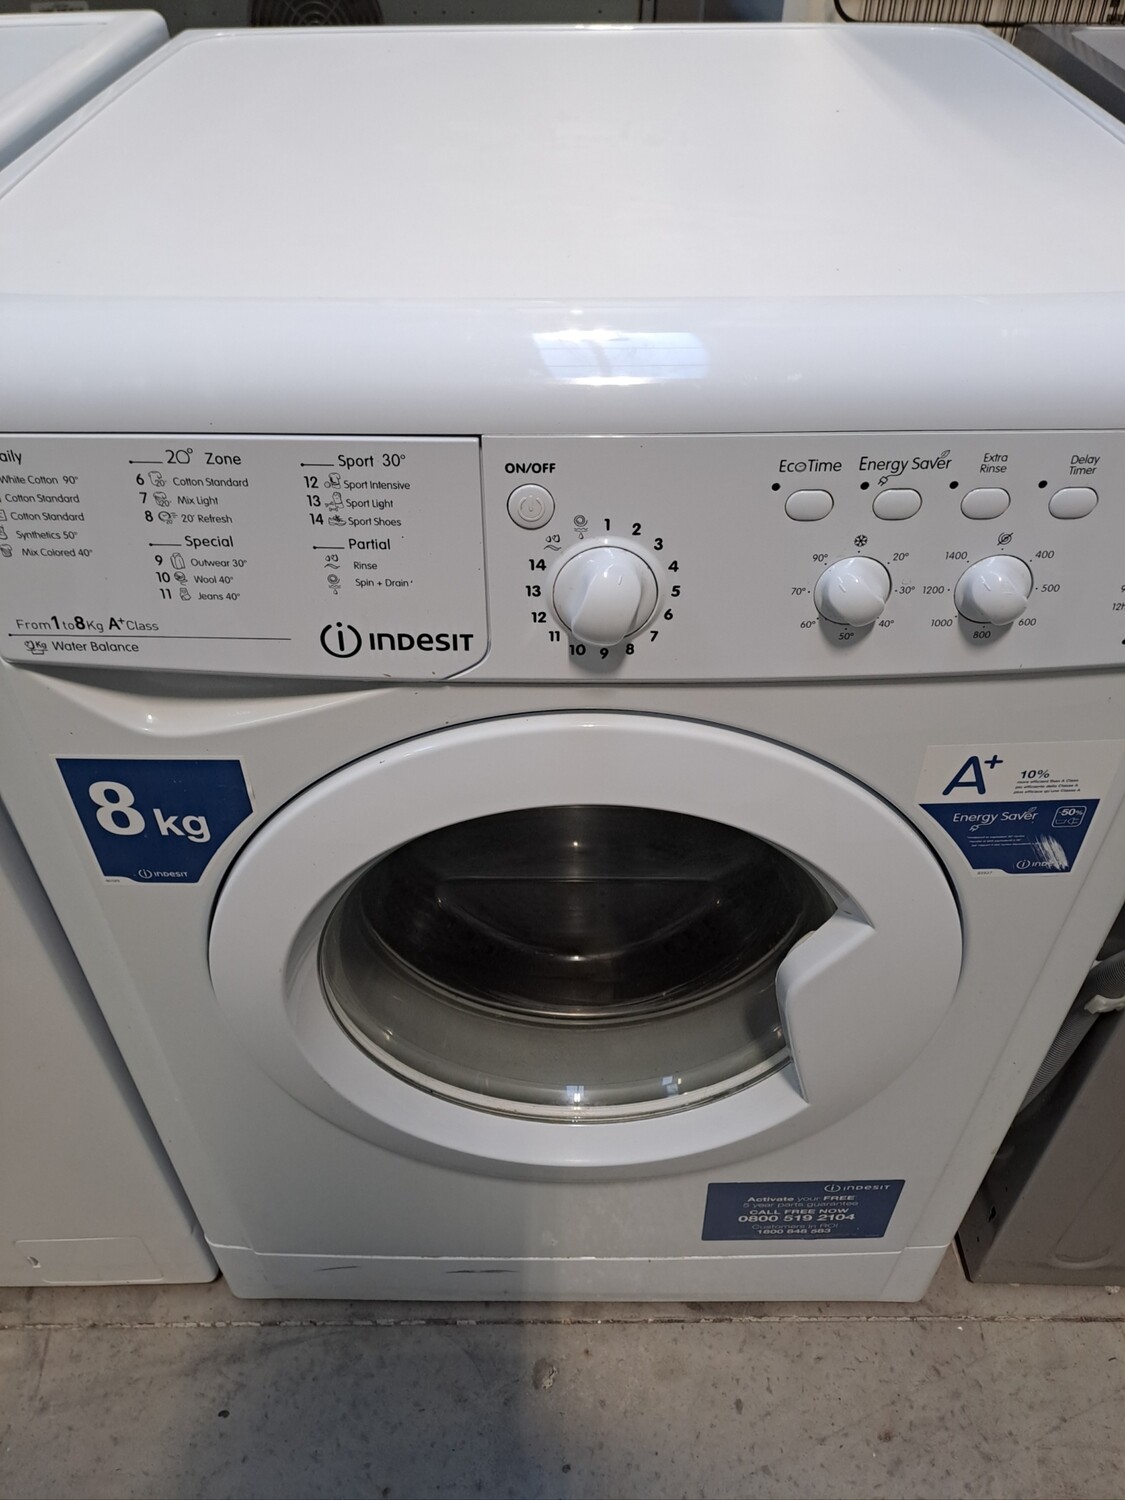 Indesit IWC81481 8kg Load 1400 Spin Washing Machine - White - Refurbished - 6 Month Guarantee